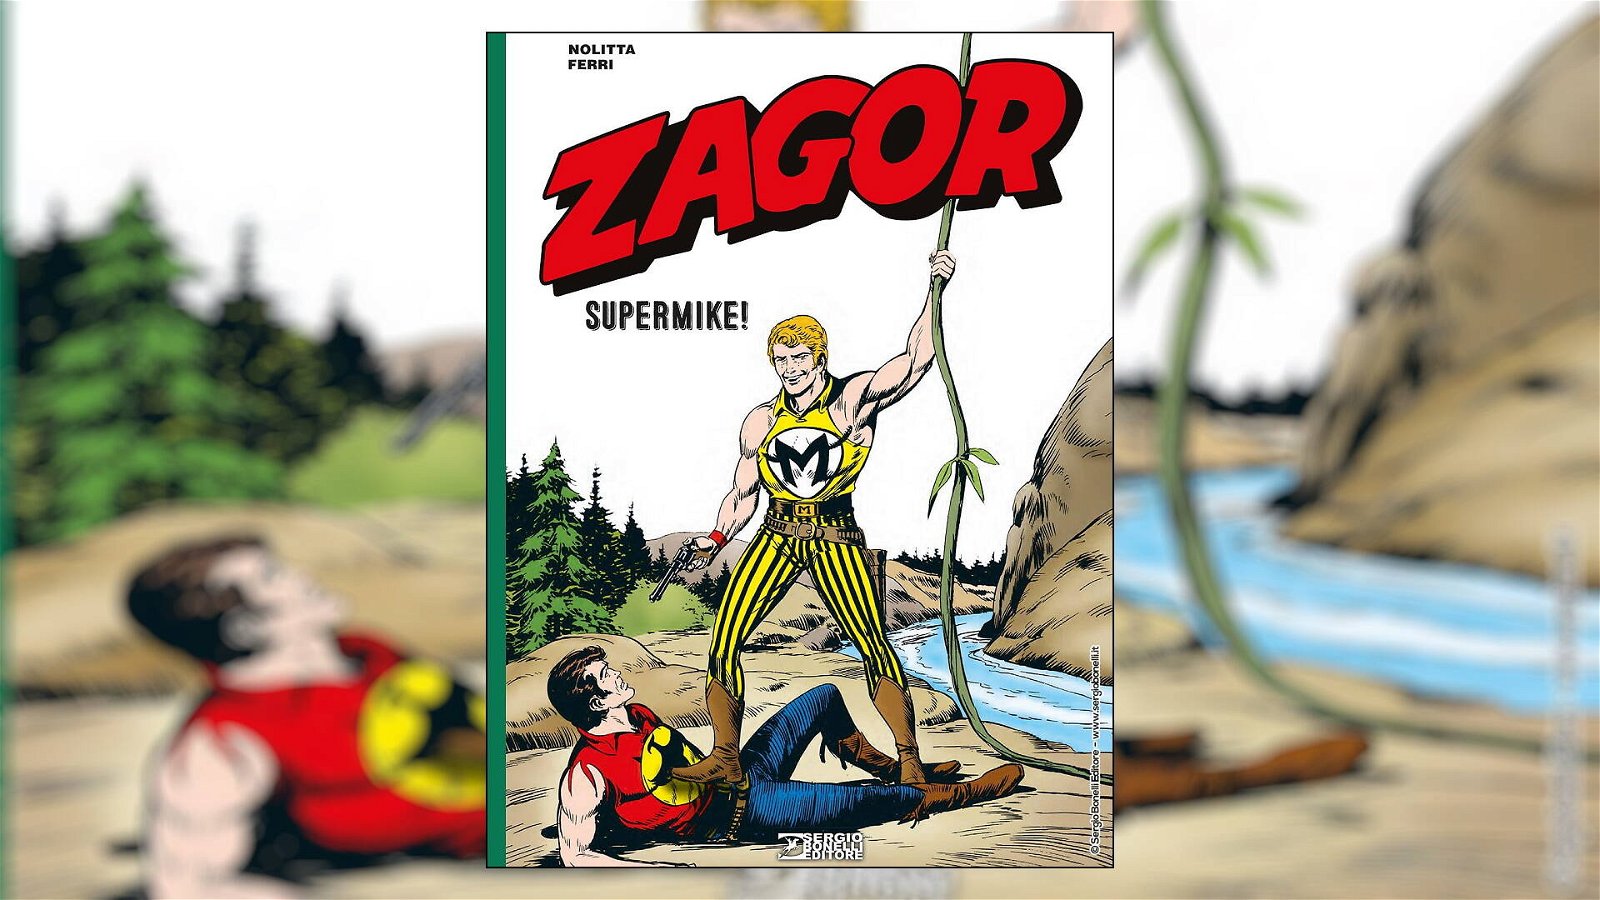 Immagine di Zagor - Supermike!, recensione: gli opposti si attraggono